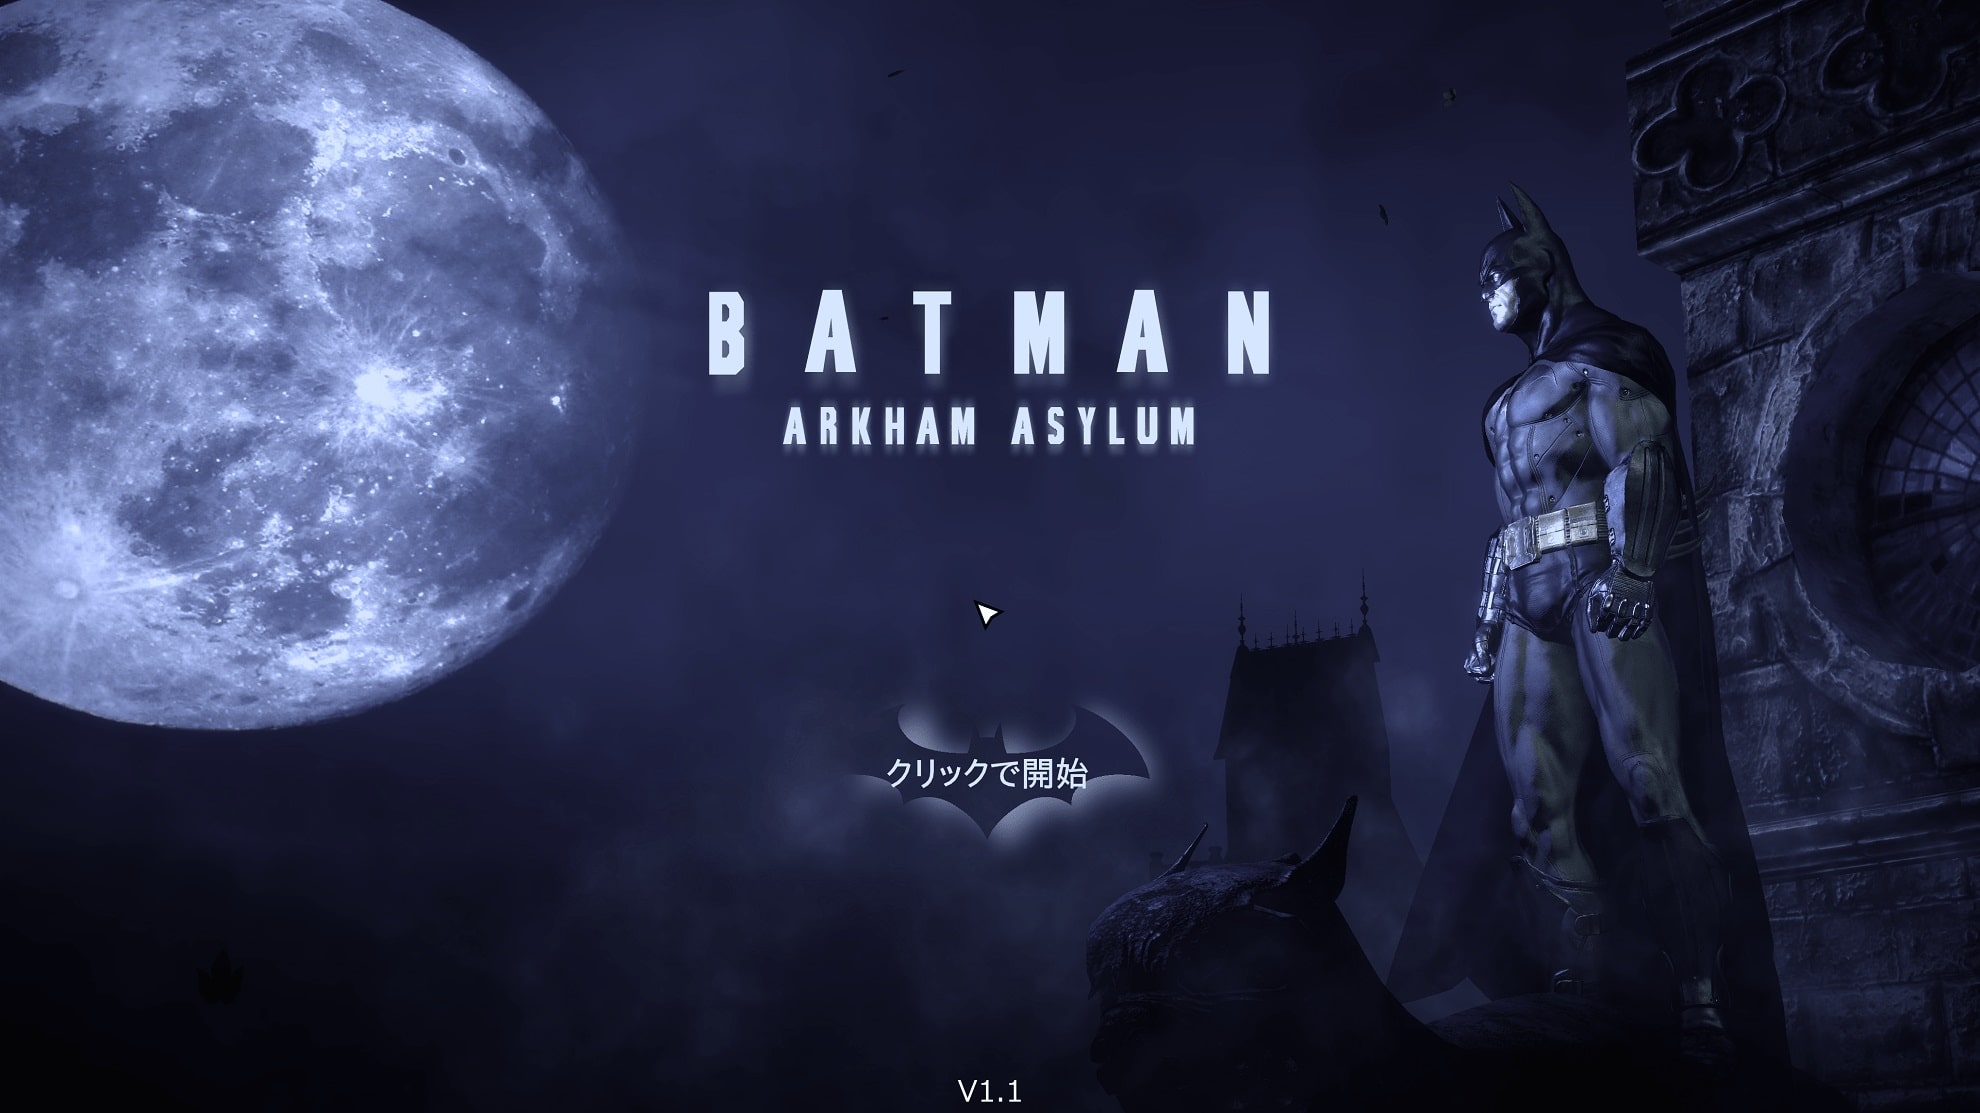 【 日本語化ＭＯＤ 】 Batman Arkham Asylum Game of the Year Edition  日本語化 の方法　( Epic Games,　Steam でも日本語化が可能 ）